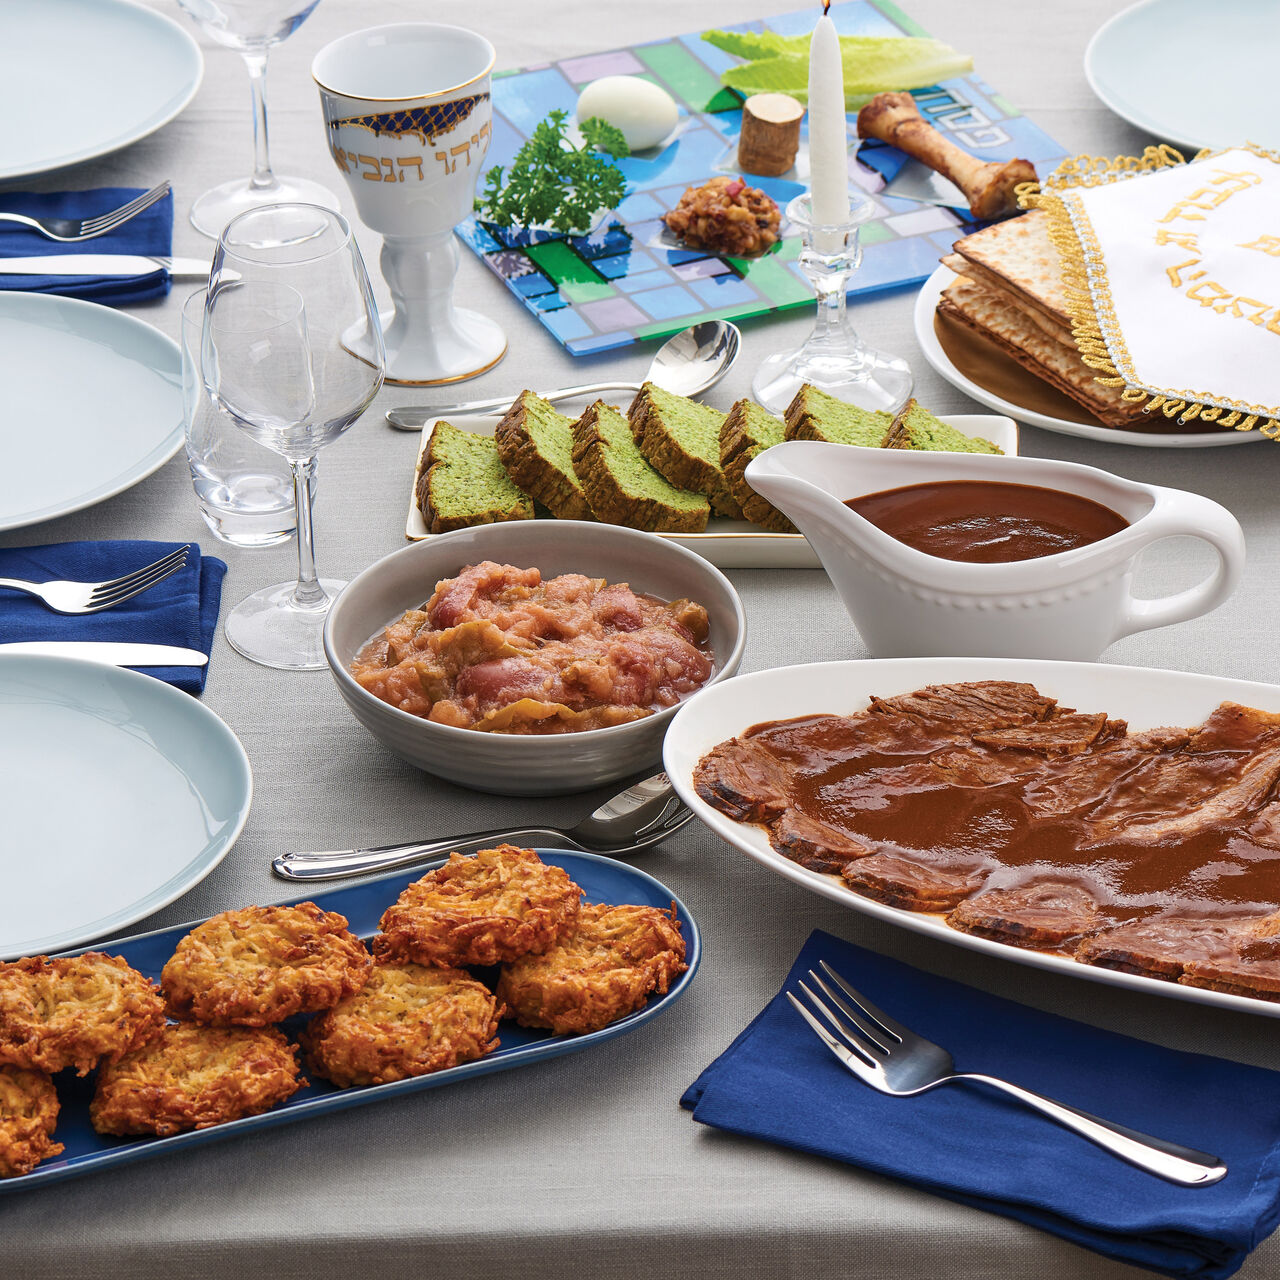 Zabar's Passover Seder Dinner for 12 - No Seder Plate, , large image number 0